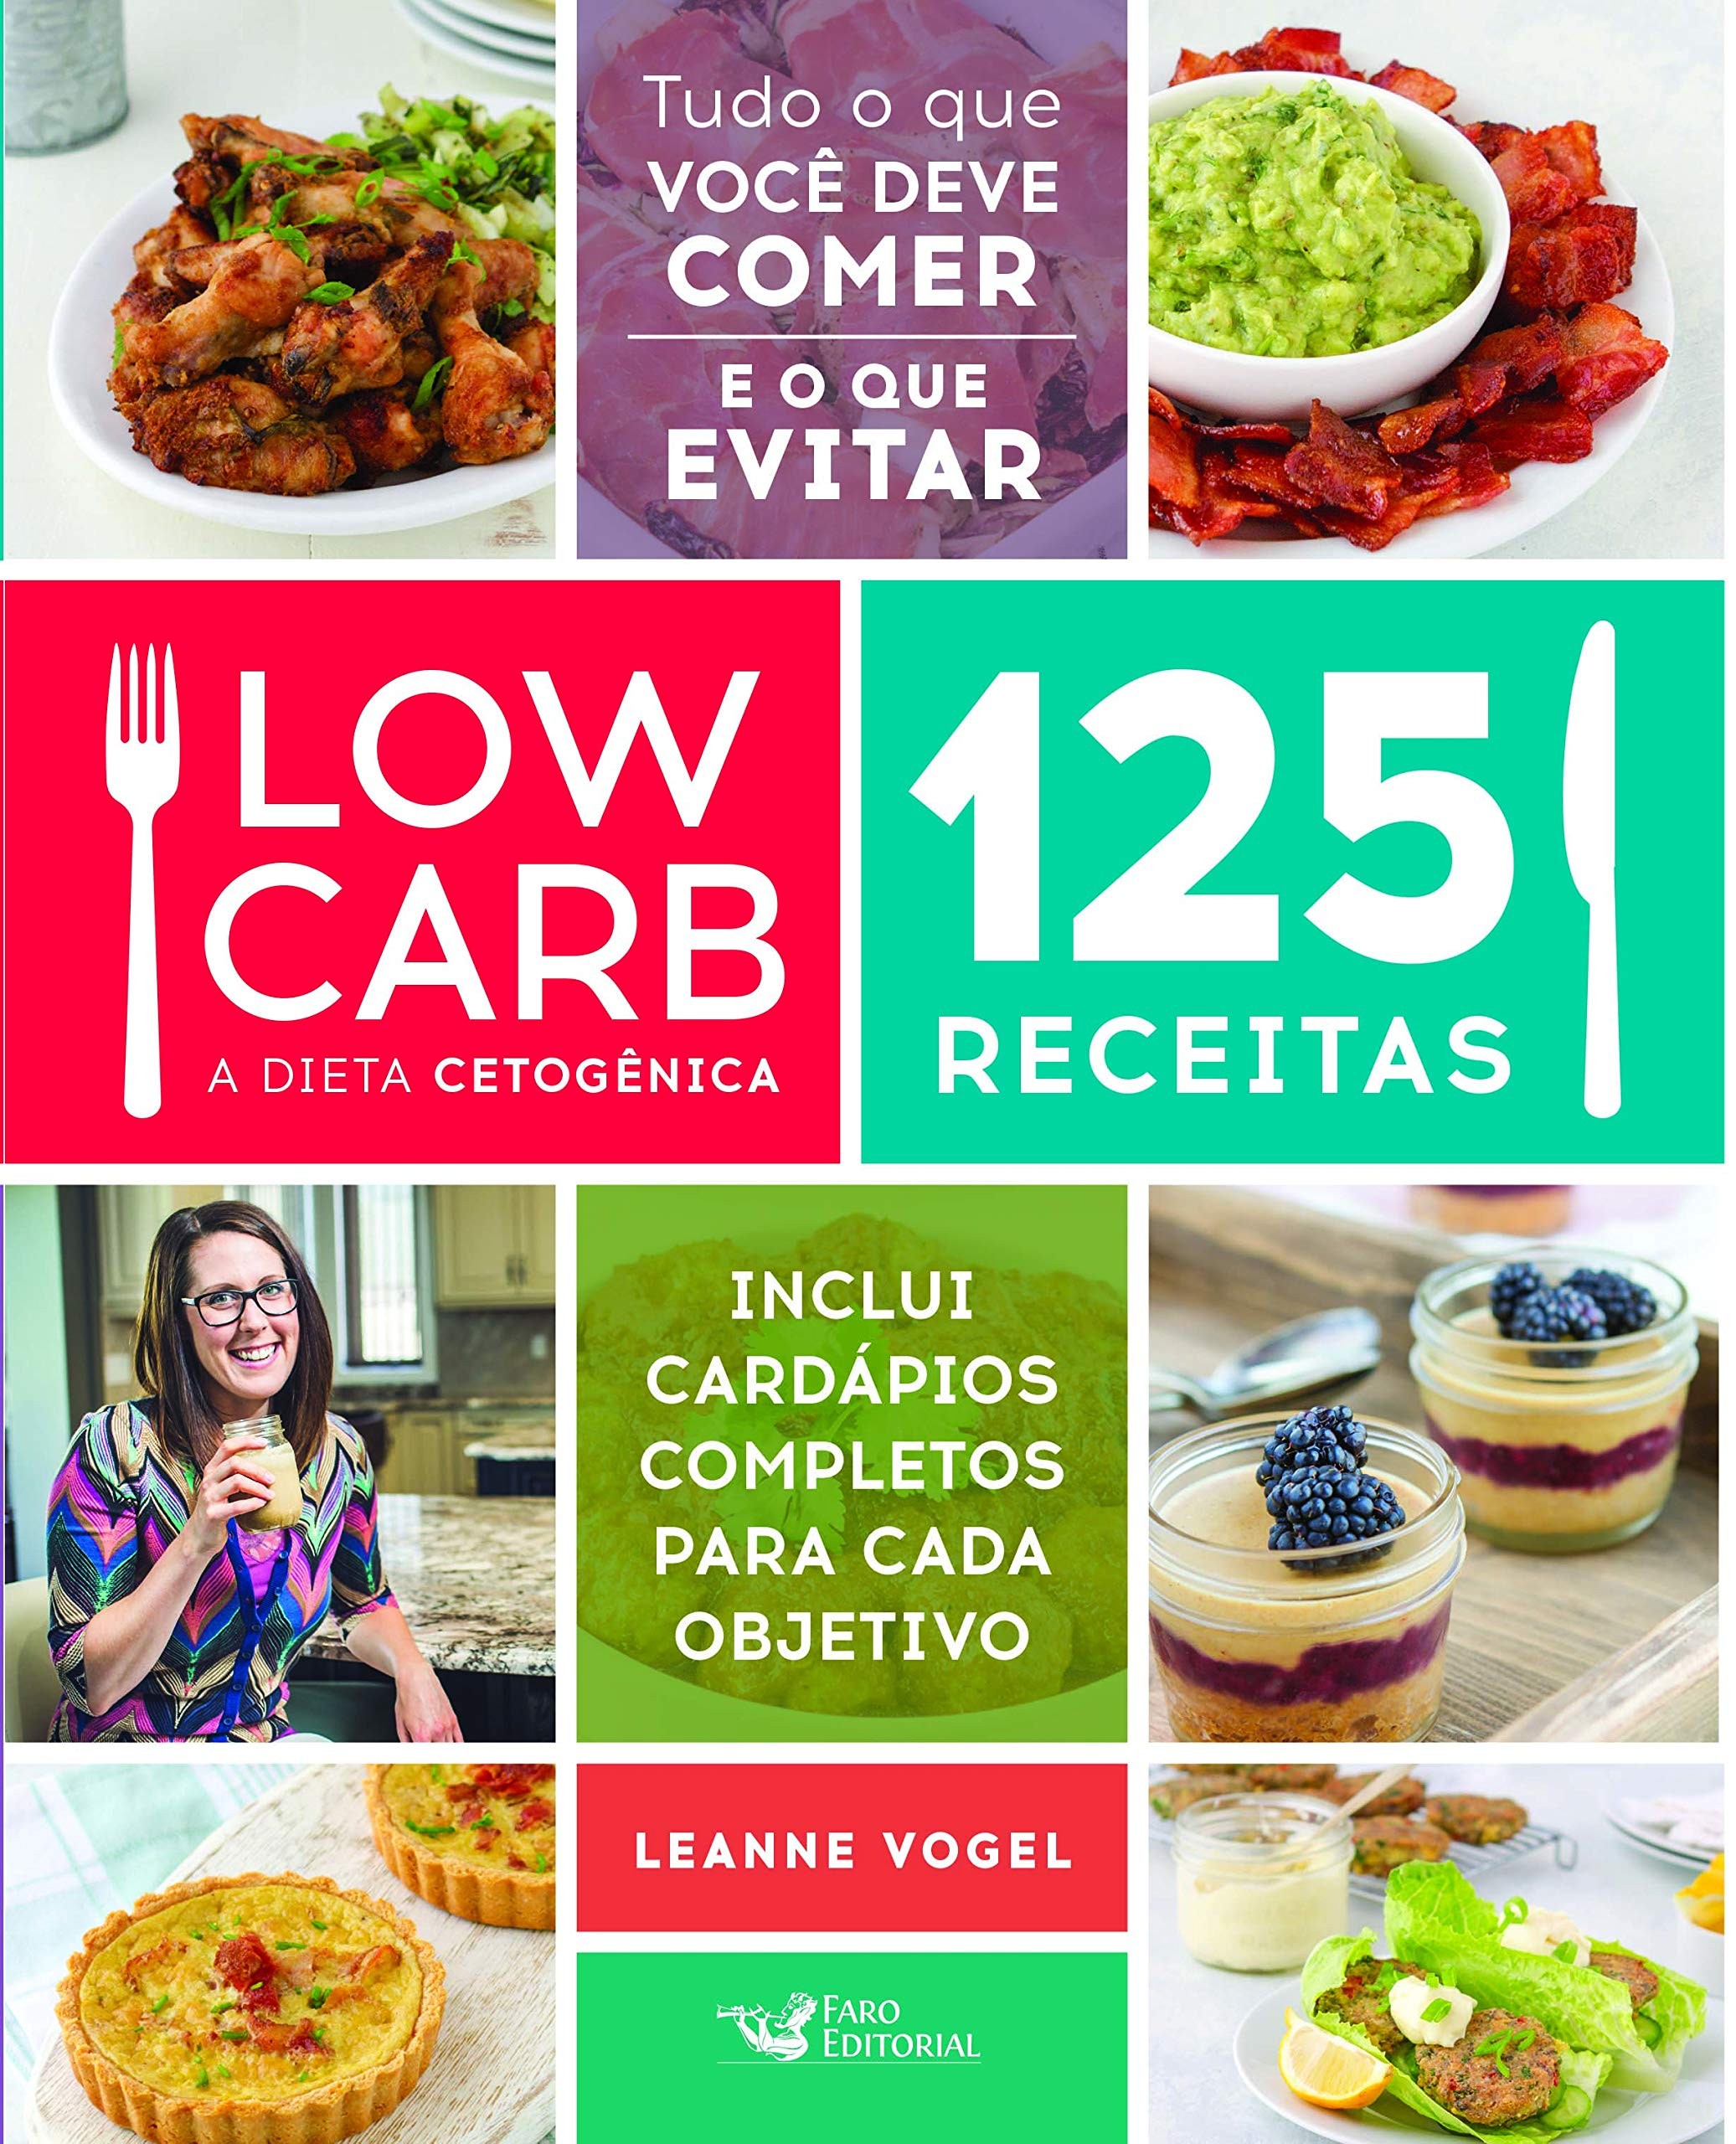 Low Carb - A Dieta Cetogênica: 125 Receitas